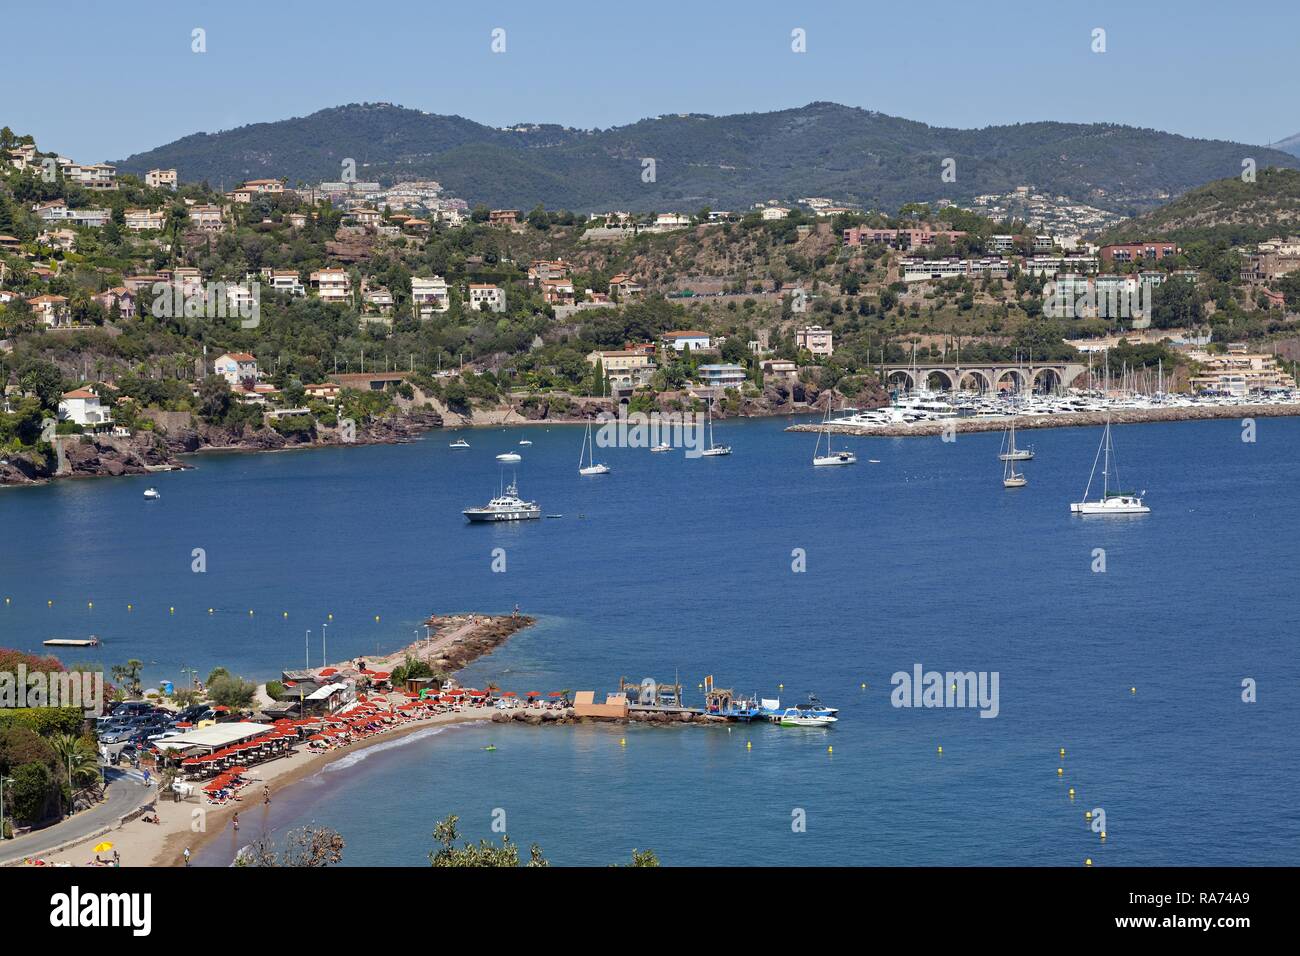 View of the town from the sea, Théoule-sur-Mer, Département Alpes-Maritimes, Provence-Alpes-Côte d'Azur, France Stock Photo